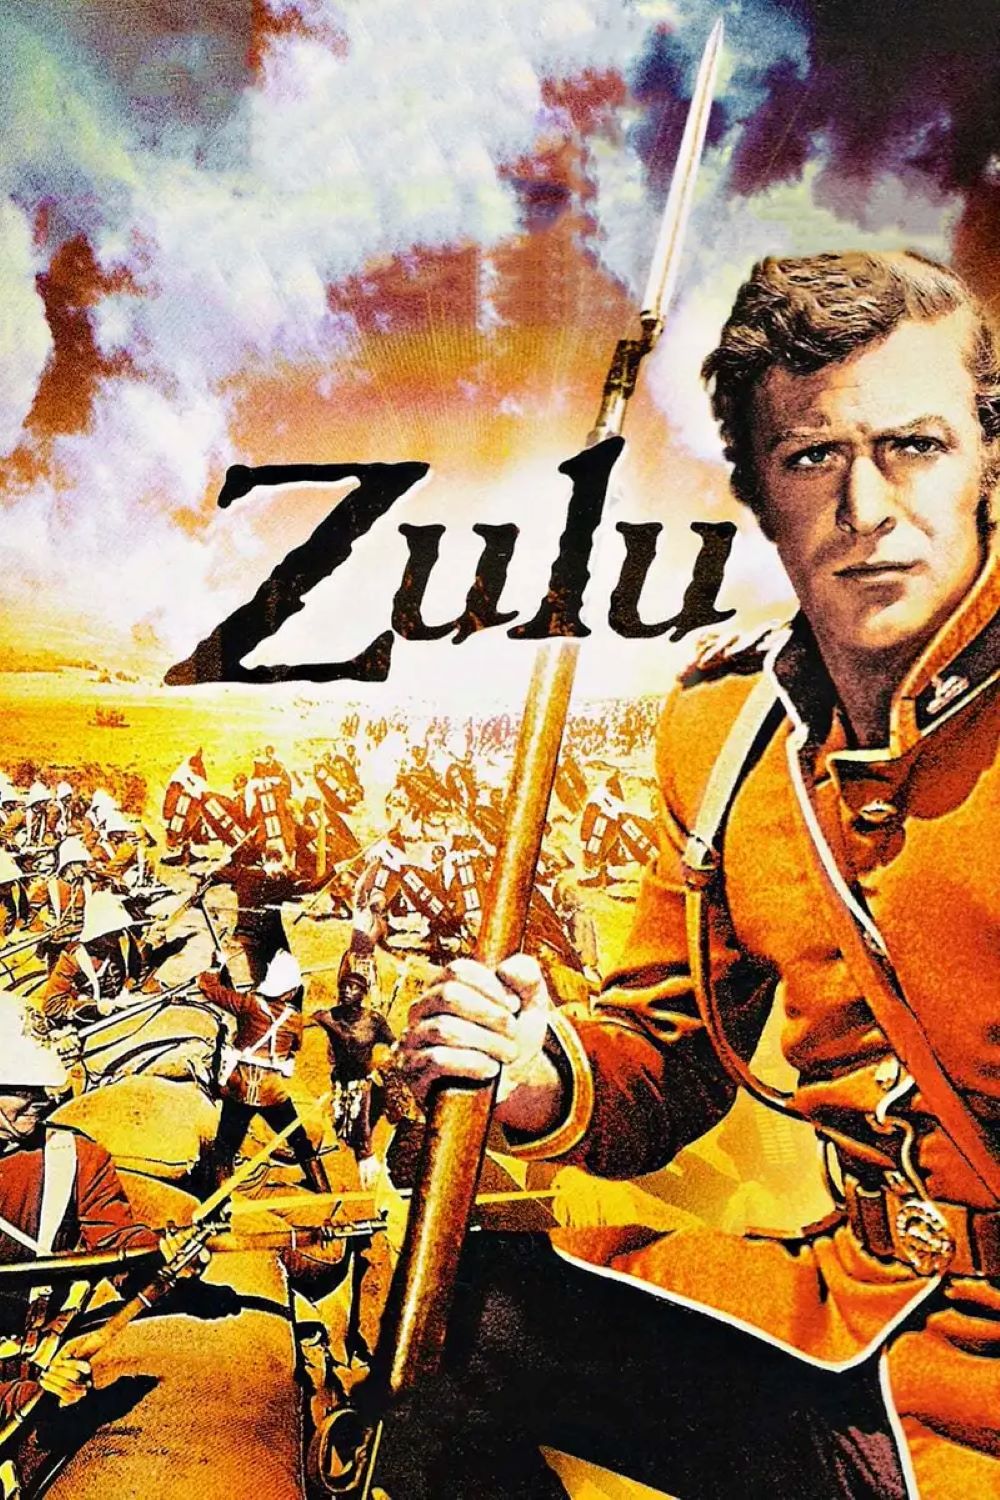 You are currently viewing Godišnjica premijere povijesnog ratnog spektakla Zulu redatelja Cya Endfielda